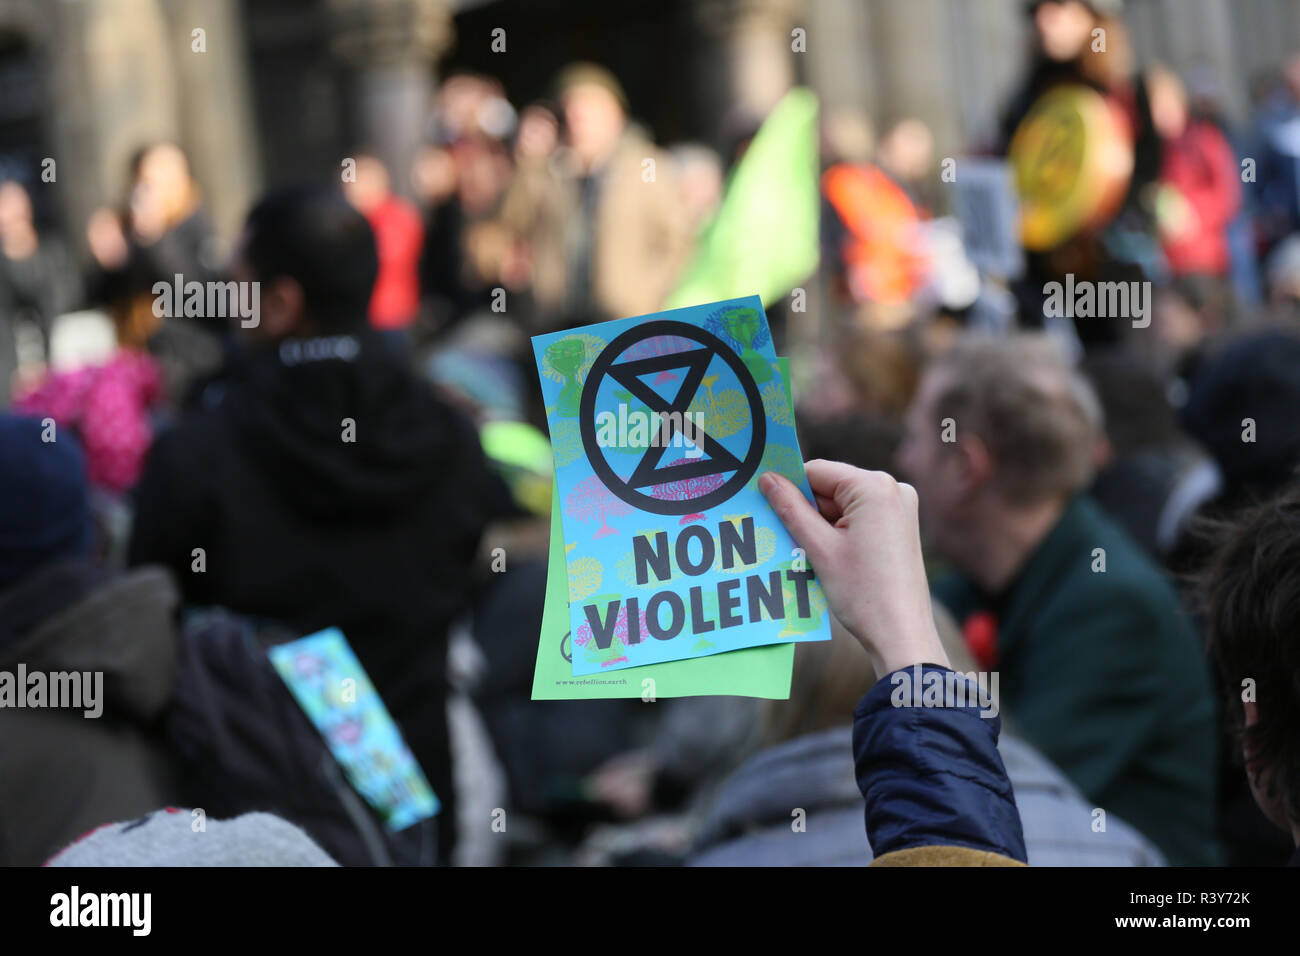 Manchester, UK. 24 Nov 2018. Une brochure de l'Extinction et symbole de rébellion non violente "mots" est considéré comme les manifestants défilent dans les rues de la ville, Manchester, Royaume-Uni, le 24 novembre 2018 Crédit : Barbara Cook/Alamy Live News Banque D'Images